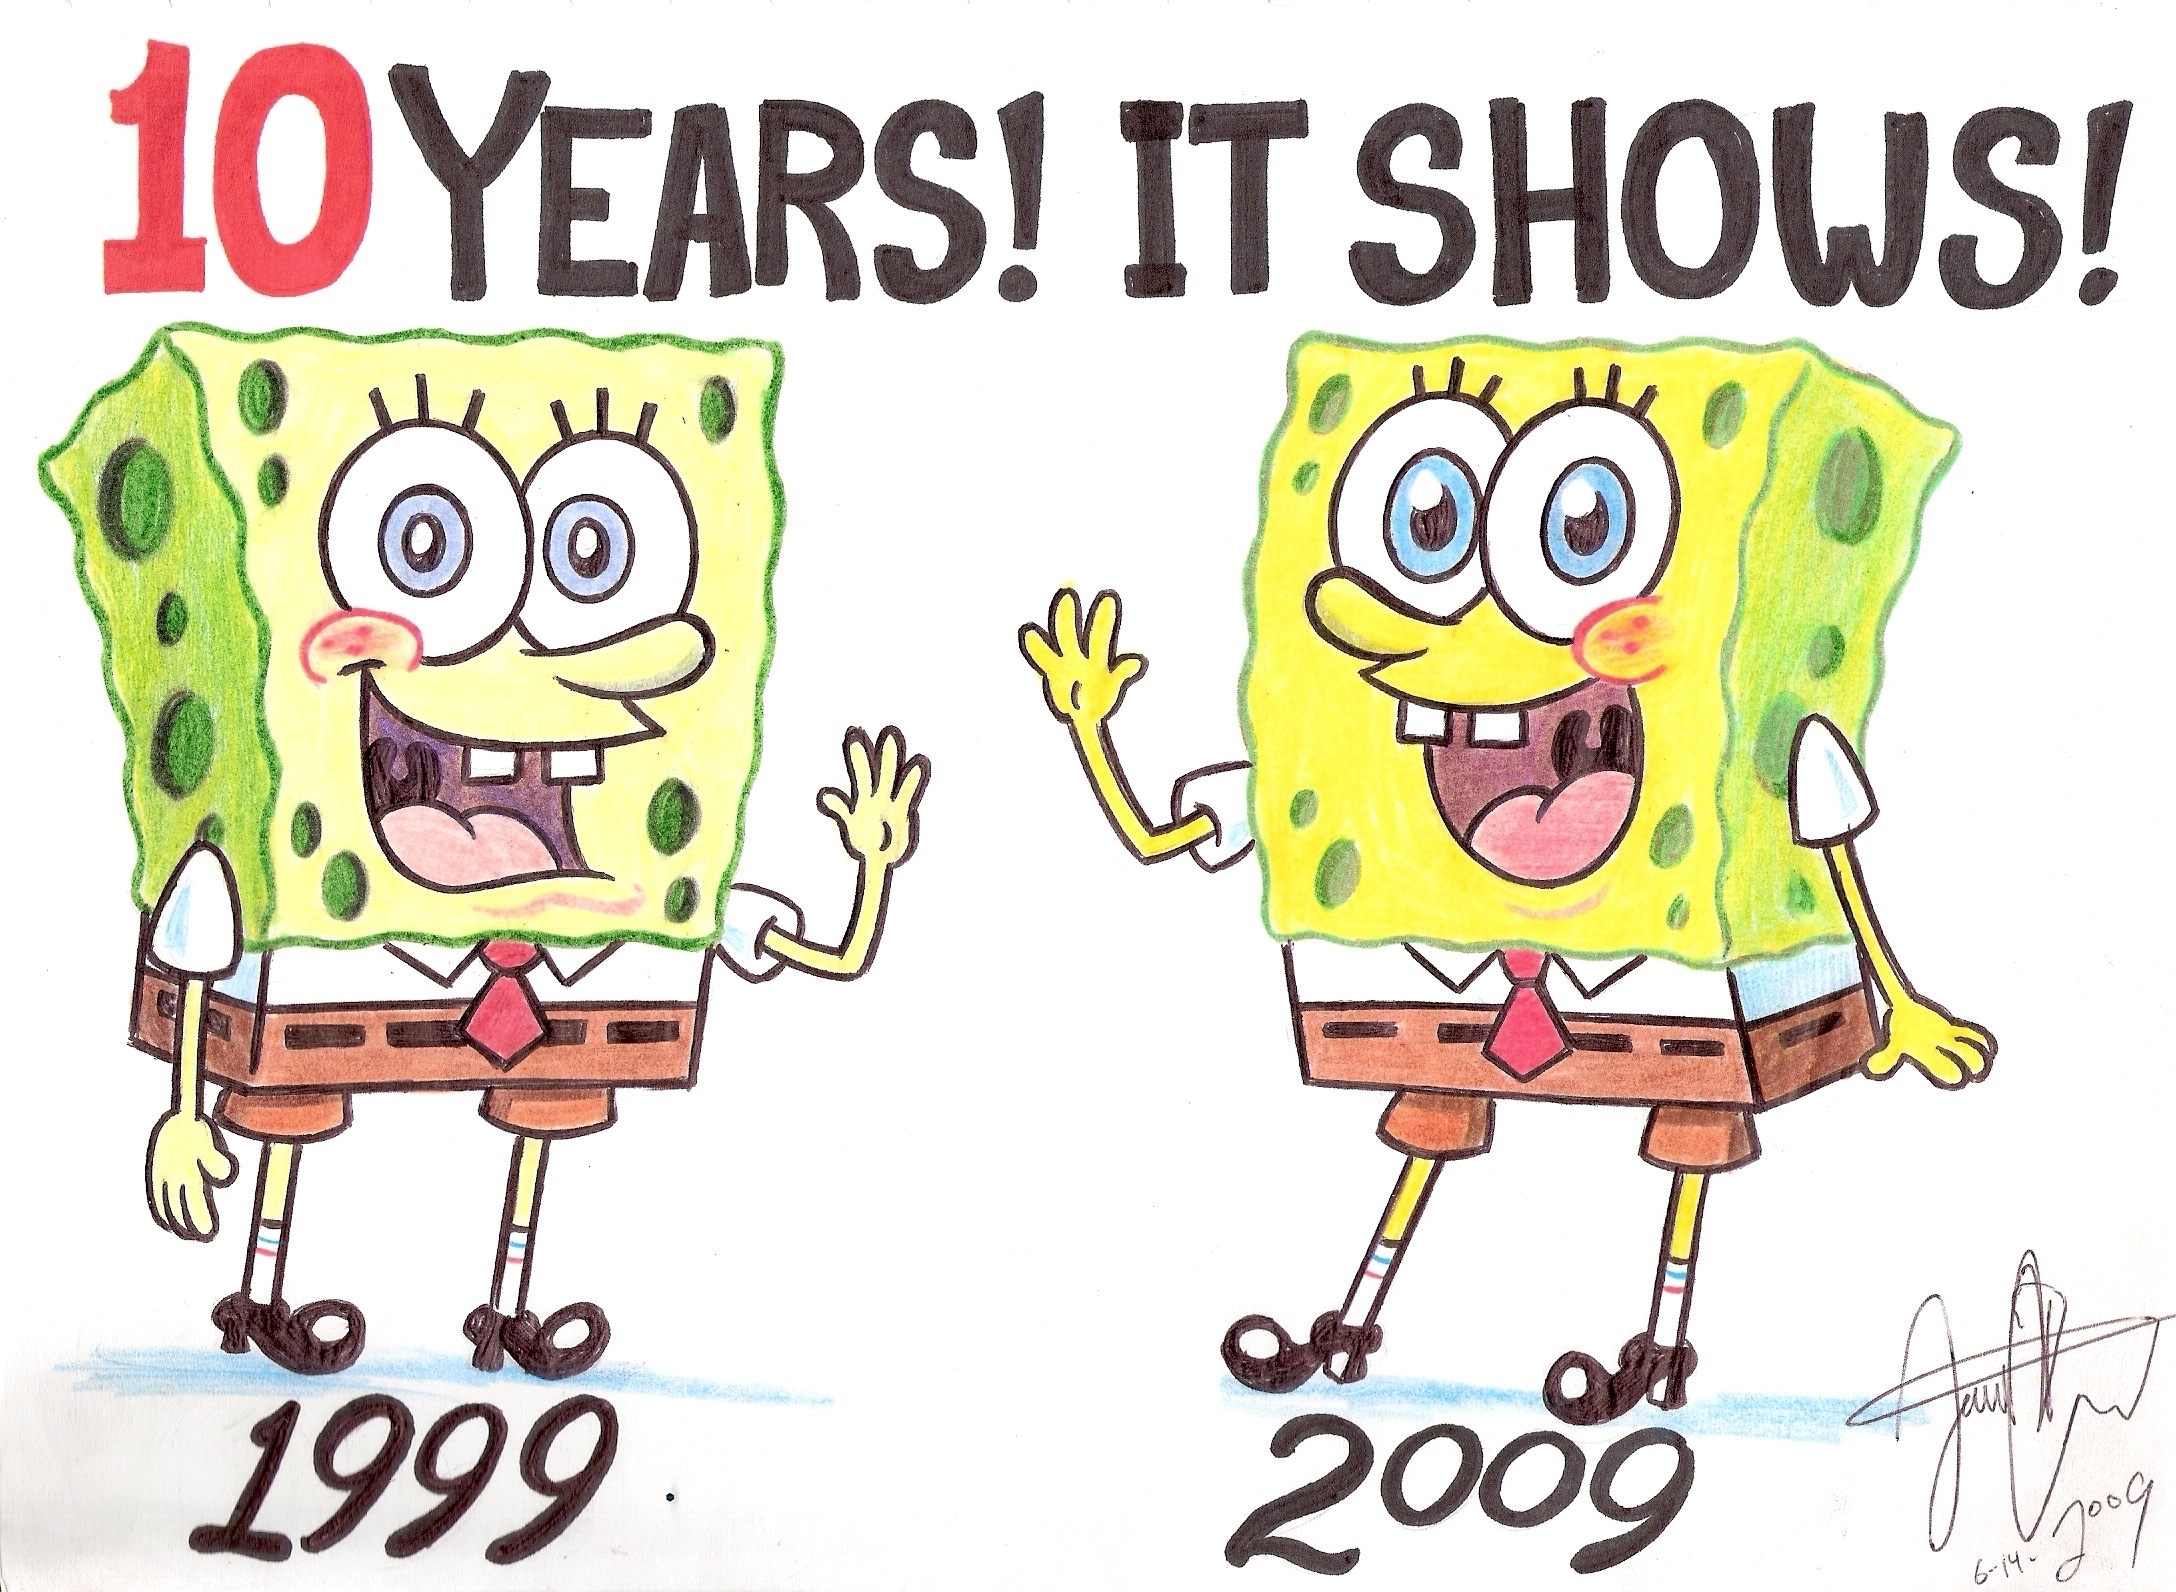 صور سبونج بوب 2010  10-Year-Difference-spongebob-squarepants-11588123-2176-1592